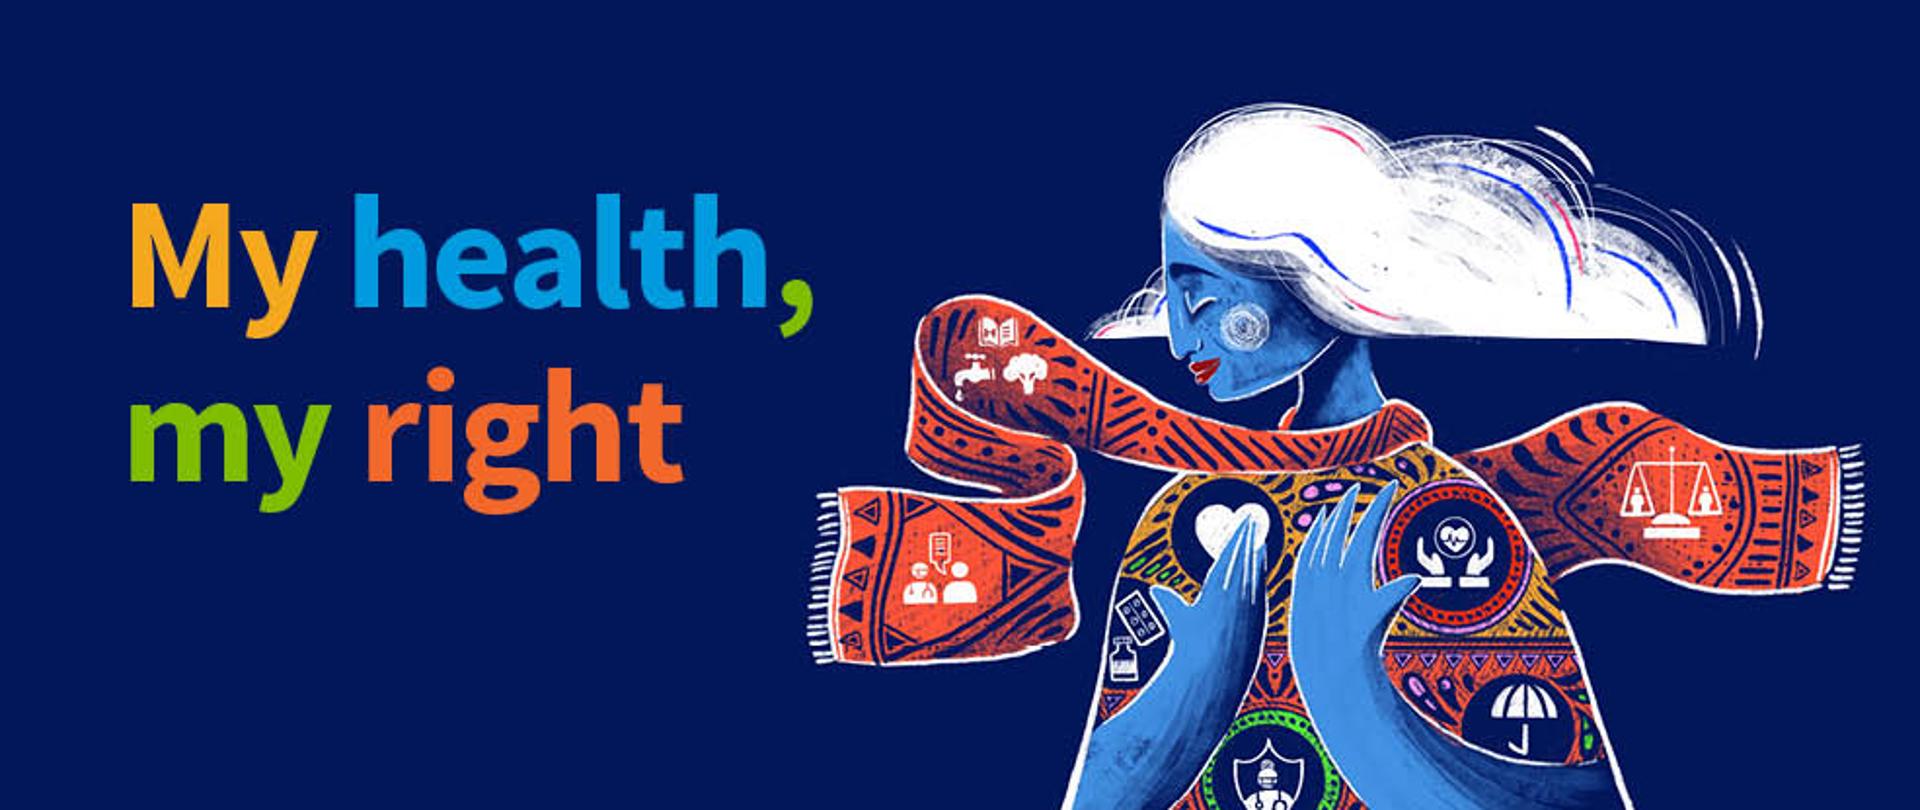 Granatowa grafika z napisem "My health, my right". Z prawej strony ikona kobiety z symbolami związanymi ze zdrowiem. 